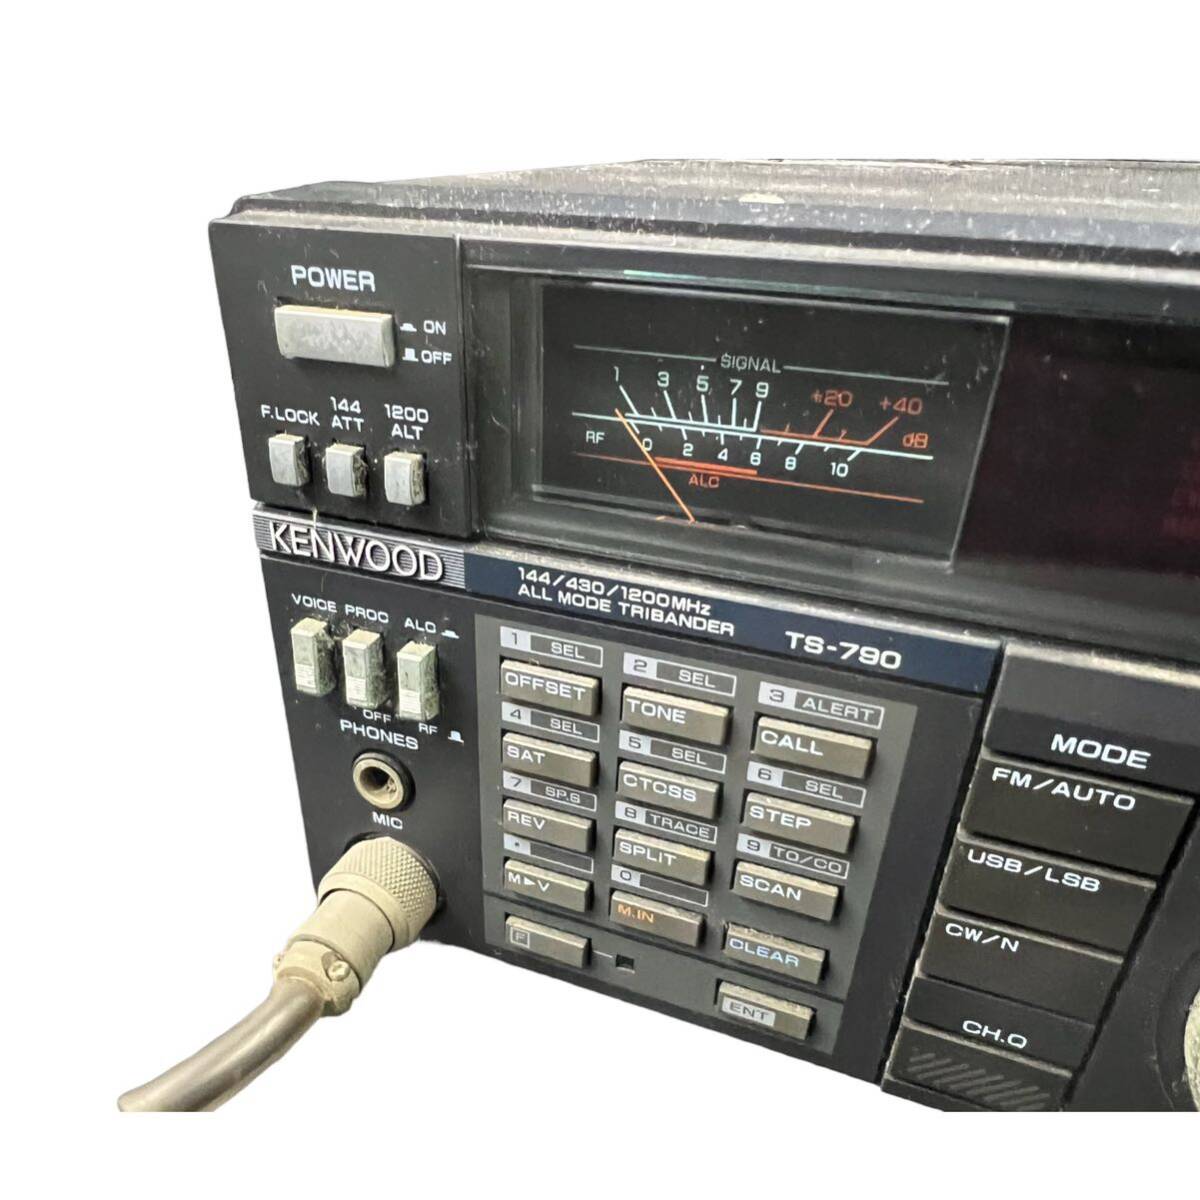 【KF2080】KENWOOD TS-790 144 430 1200MHz オールモード トランシーバー 無線機 MC-80 スタンドマイク ケンウッド _画像5